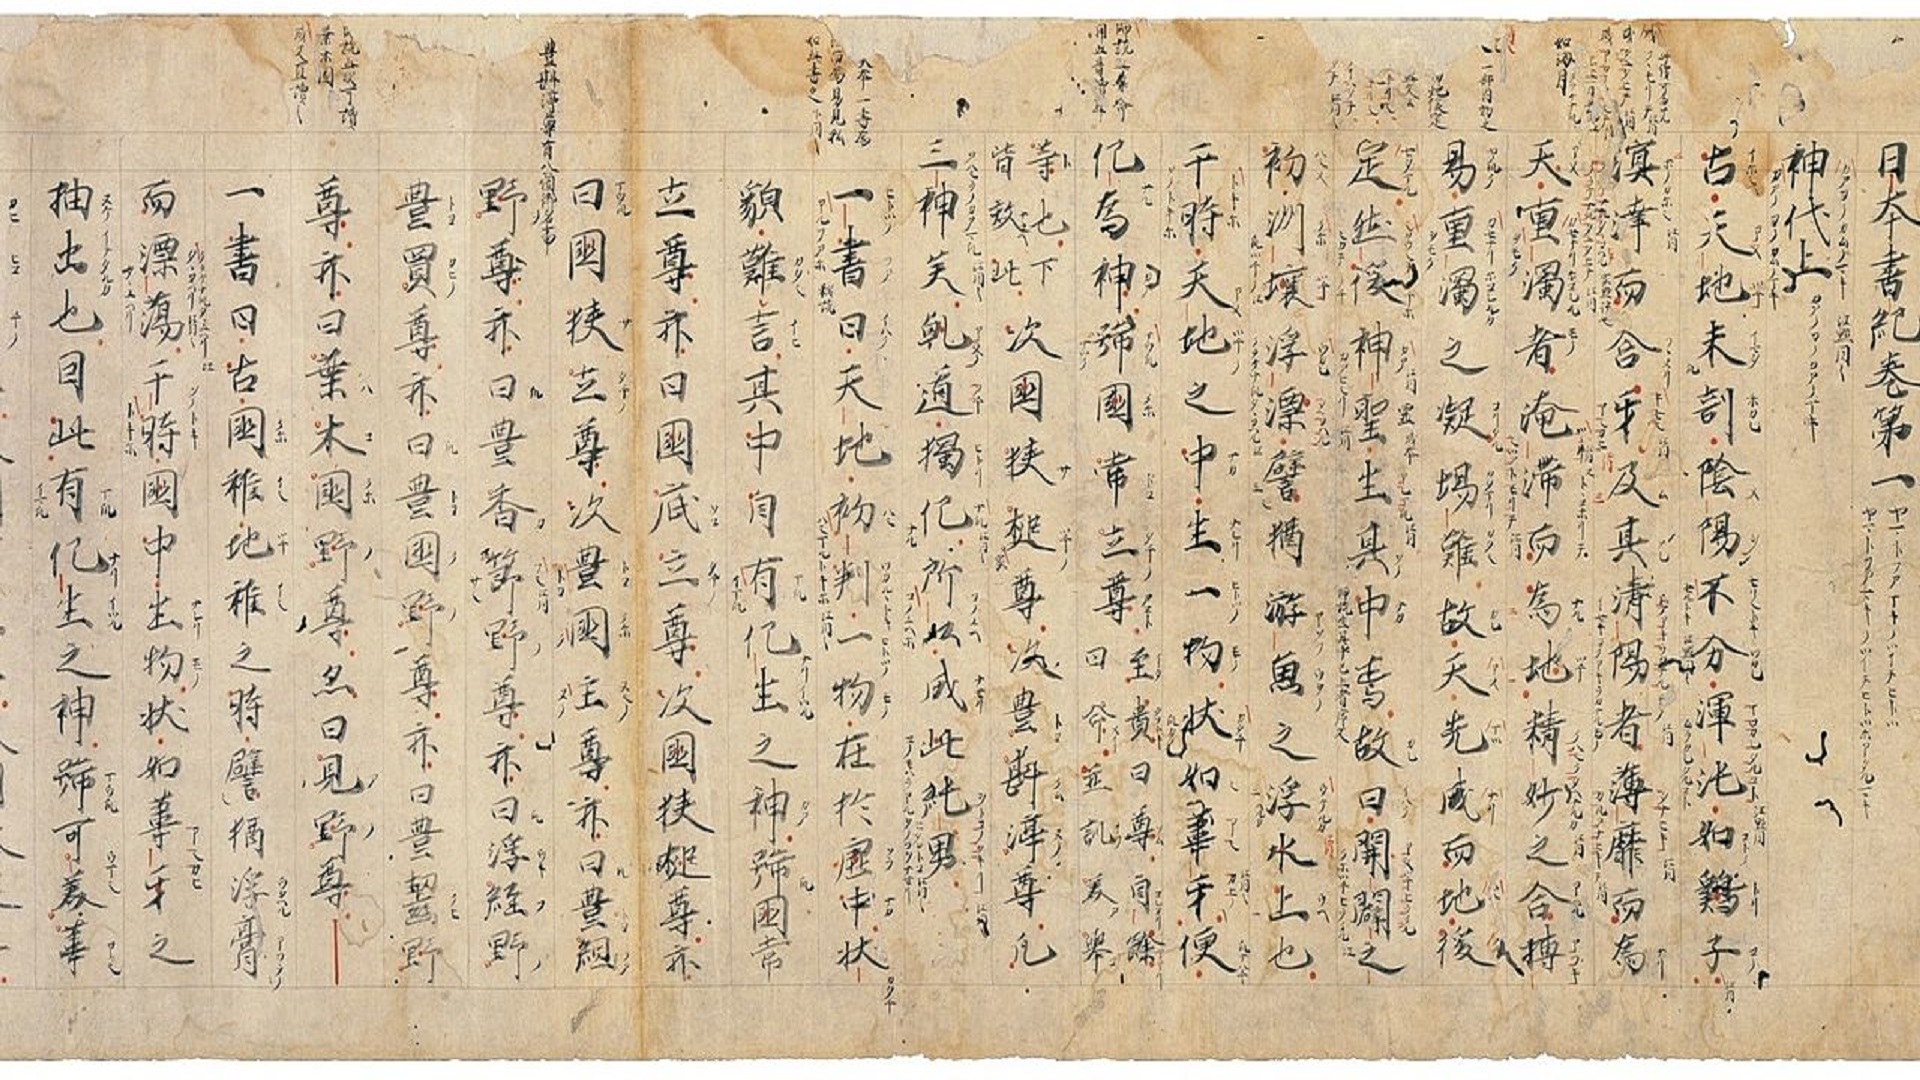 نيهون شوكي" ("حوليات اليابان")،وقد كُتب للإمبراطورة "جينشو" سنة 7